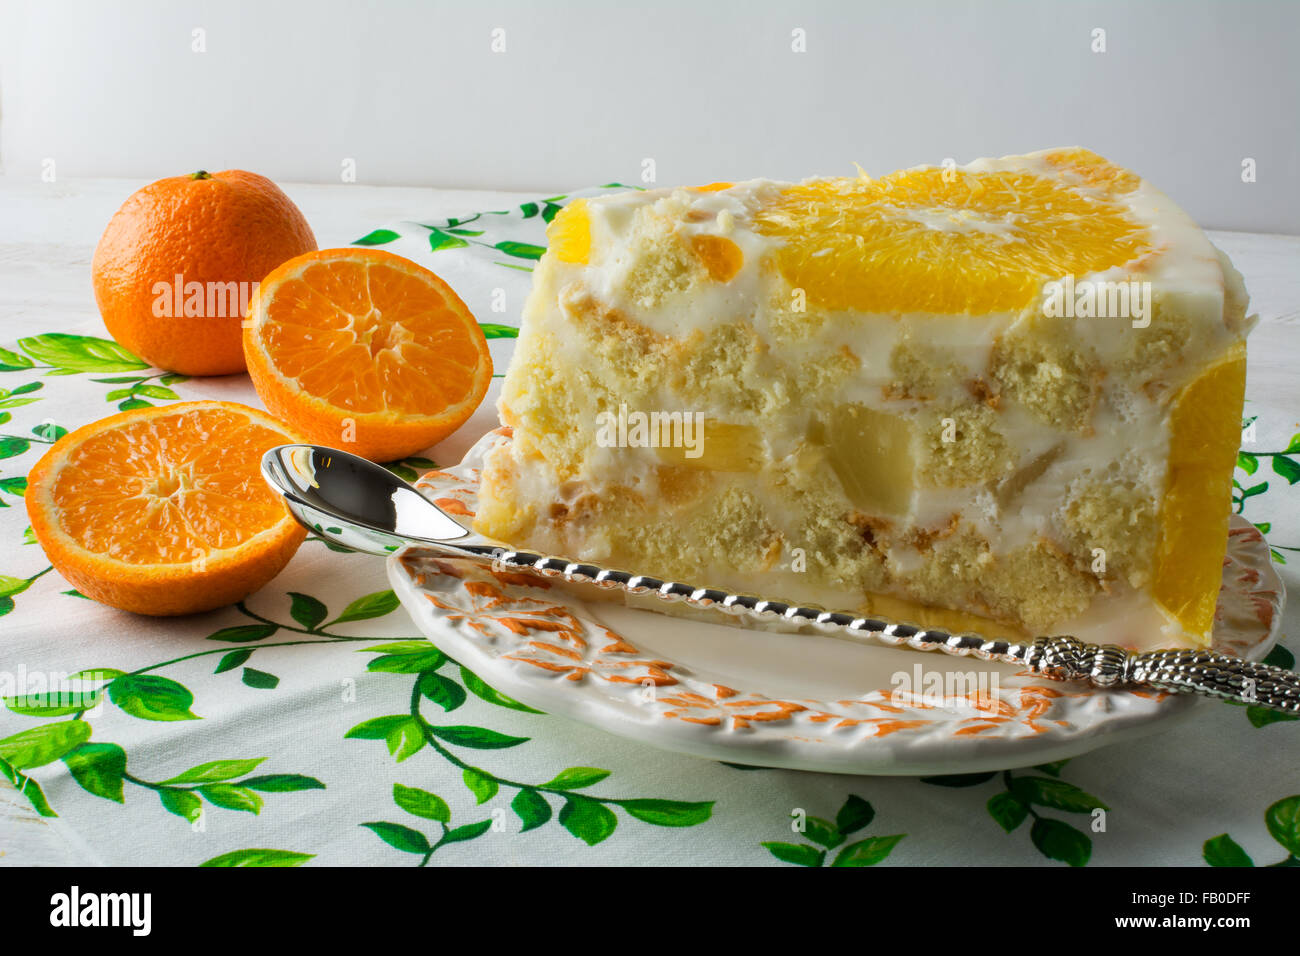 Leckere weiße Gelee Früchte Tarte Slice, Mousse Schlagsahne Sahne Joghurt Joghurt Soufflés Torte mit Orange und Mandarine. Homemad Stockfoto